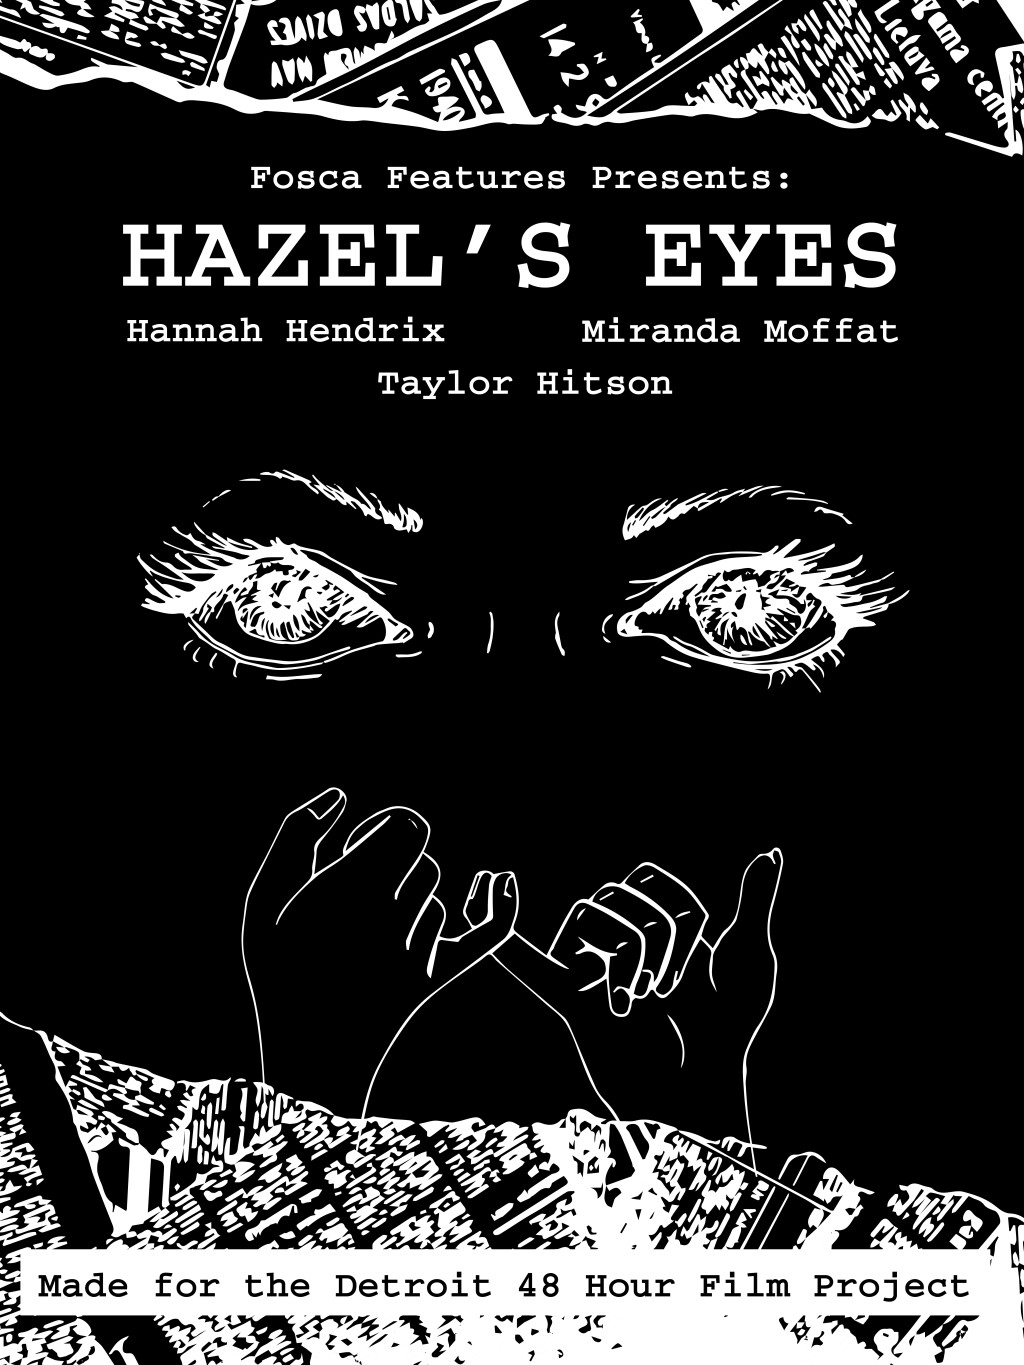 Filmposter for Hazel's Eyes